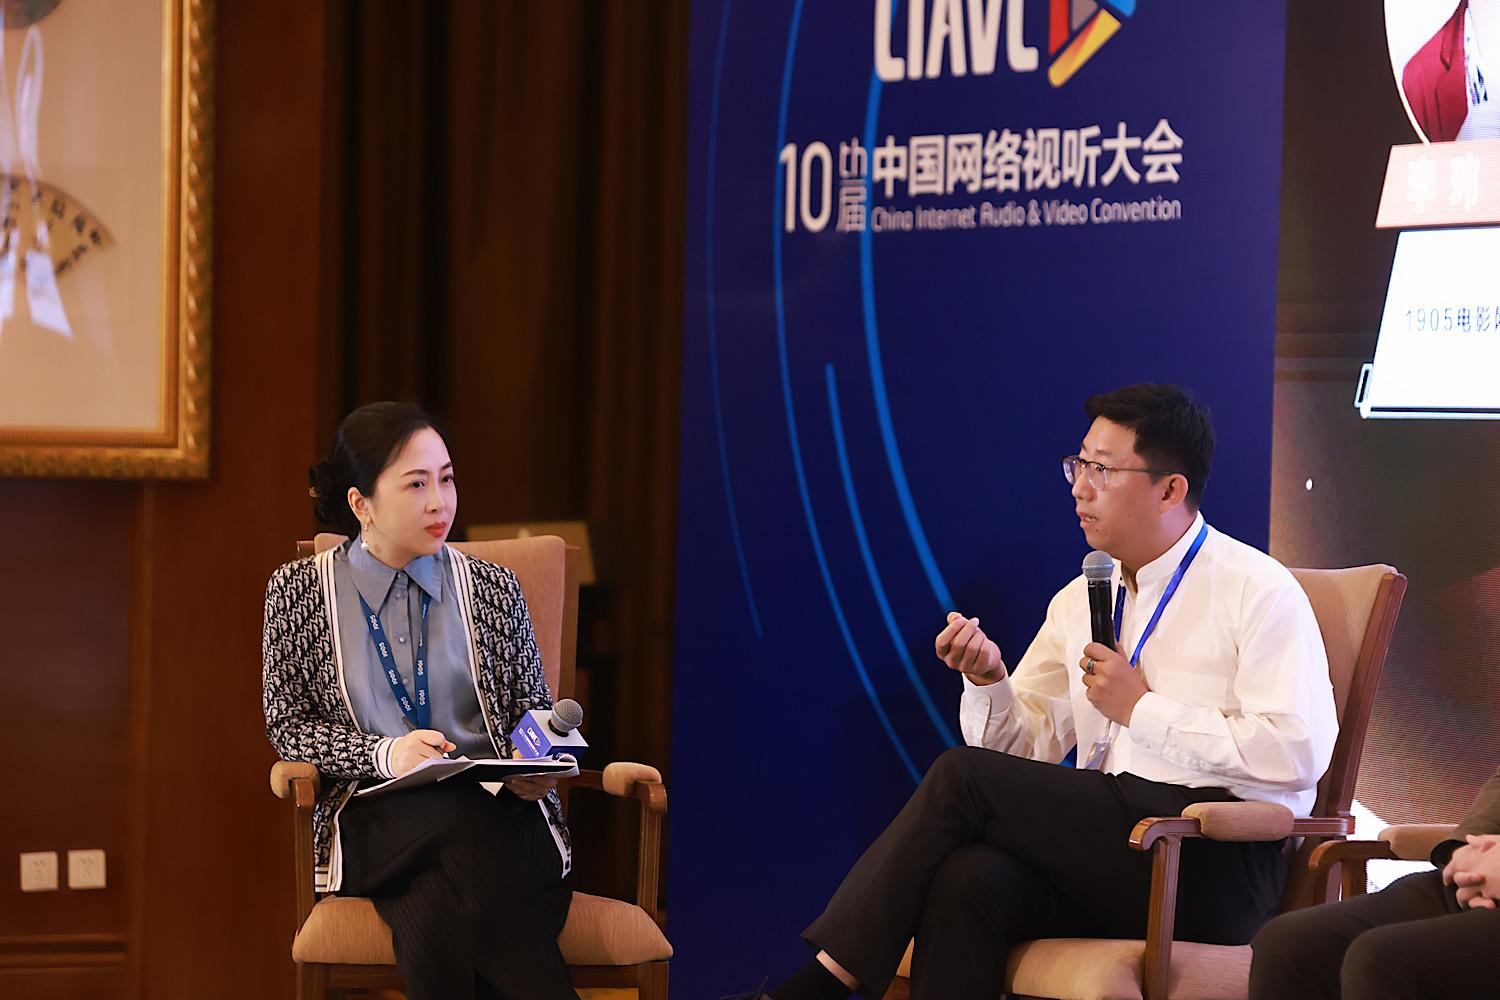 第十届中国网络视听大会开幕，分论坛探讨视听文化产业发展